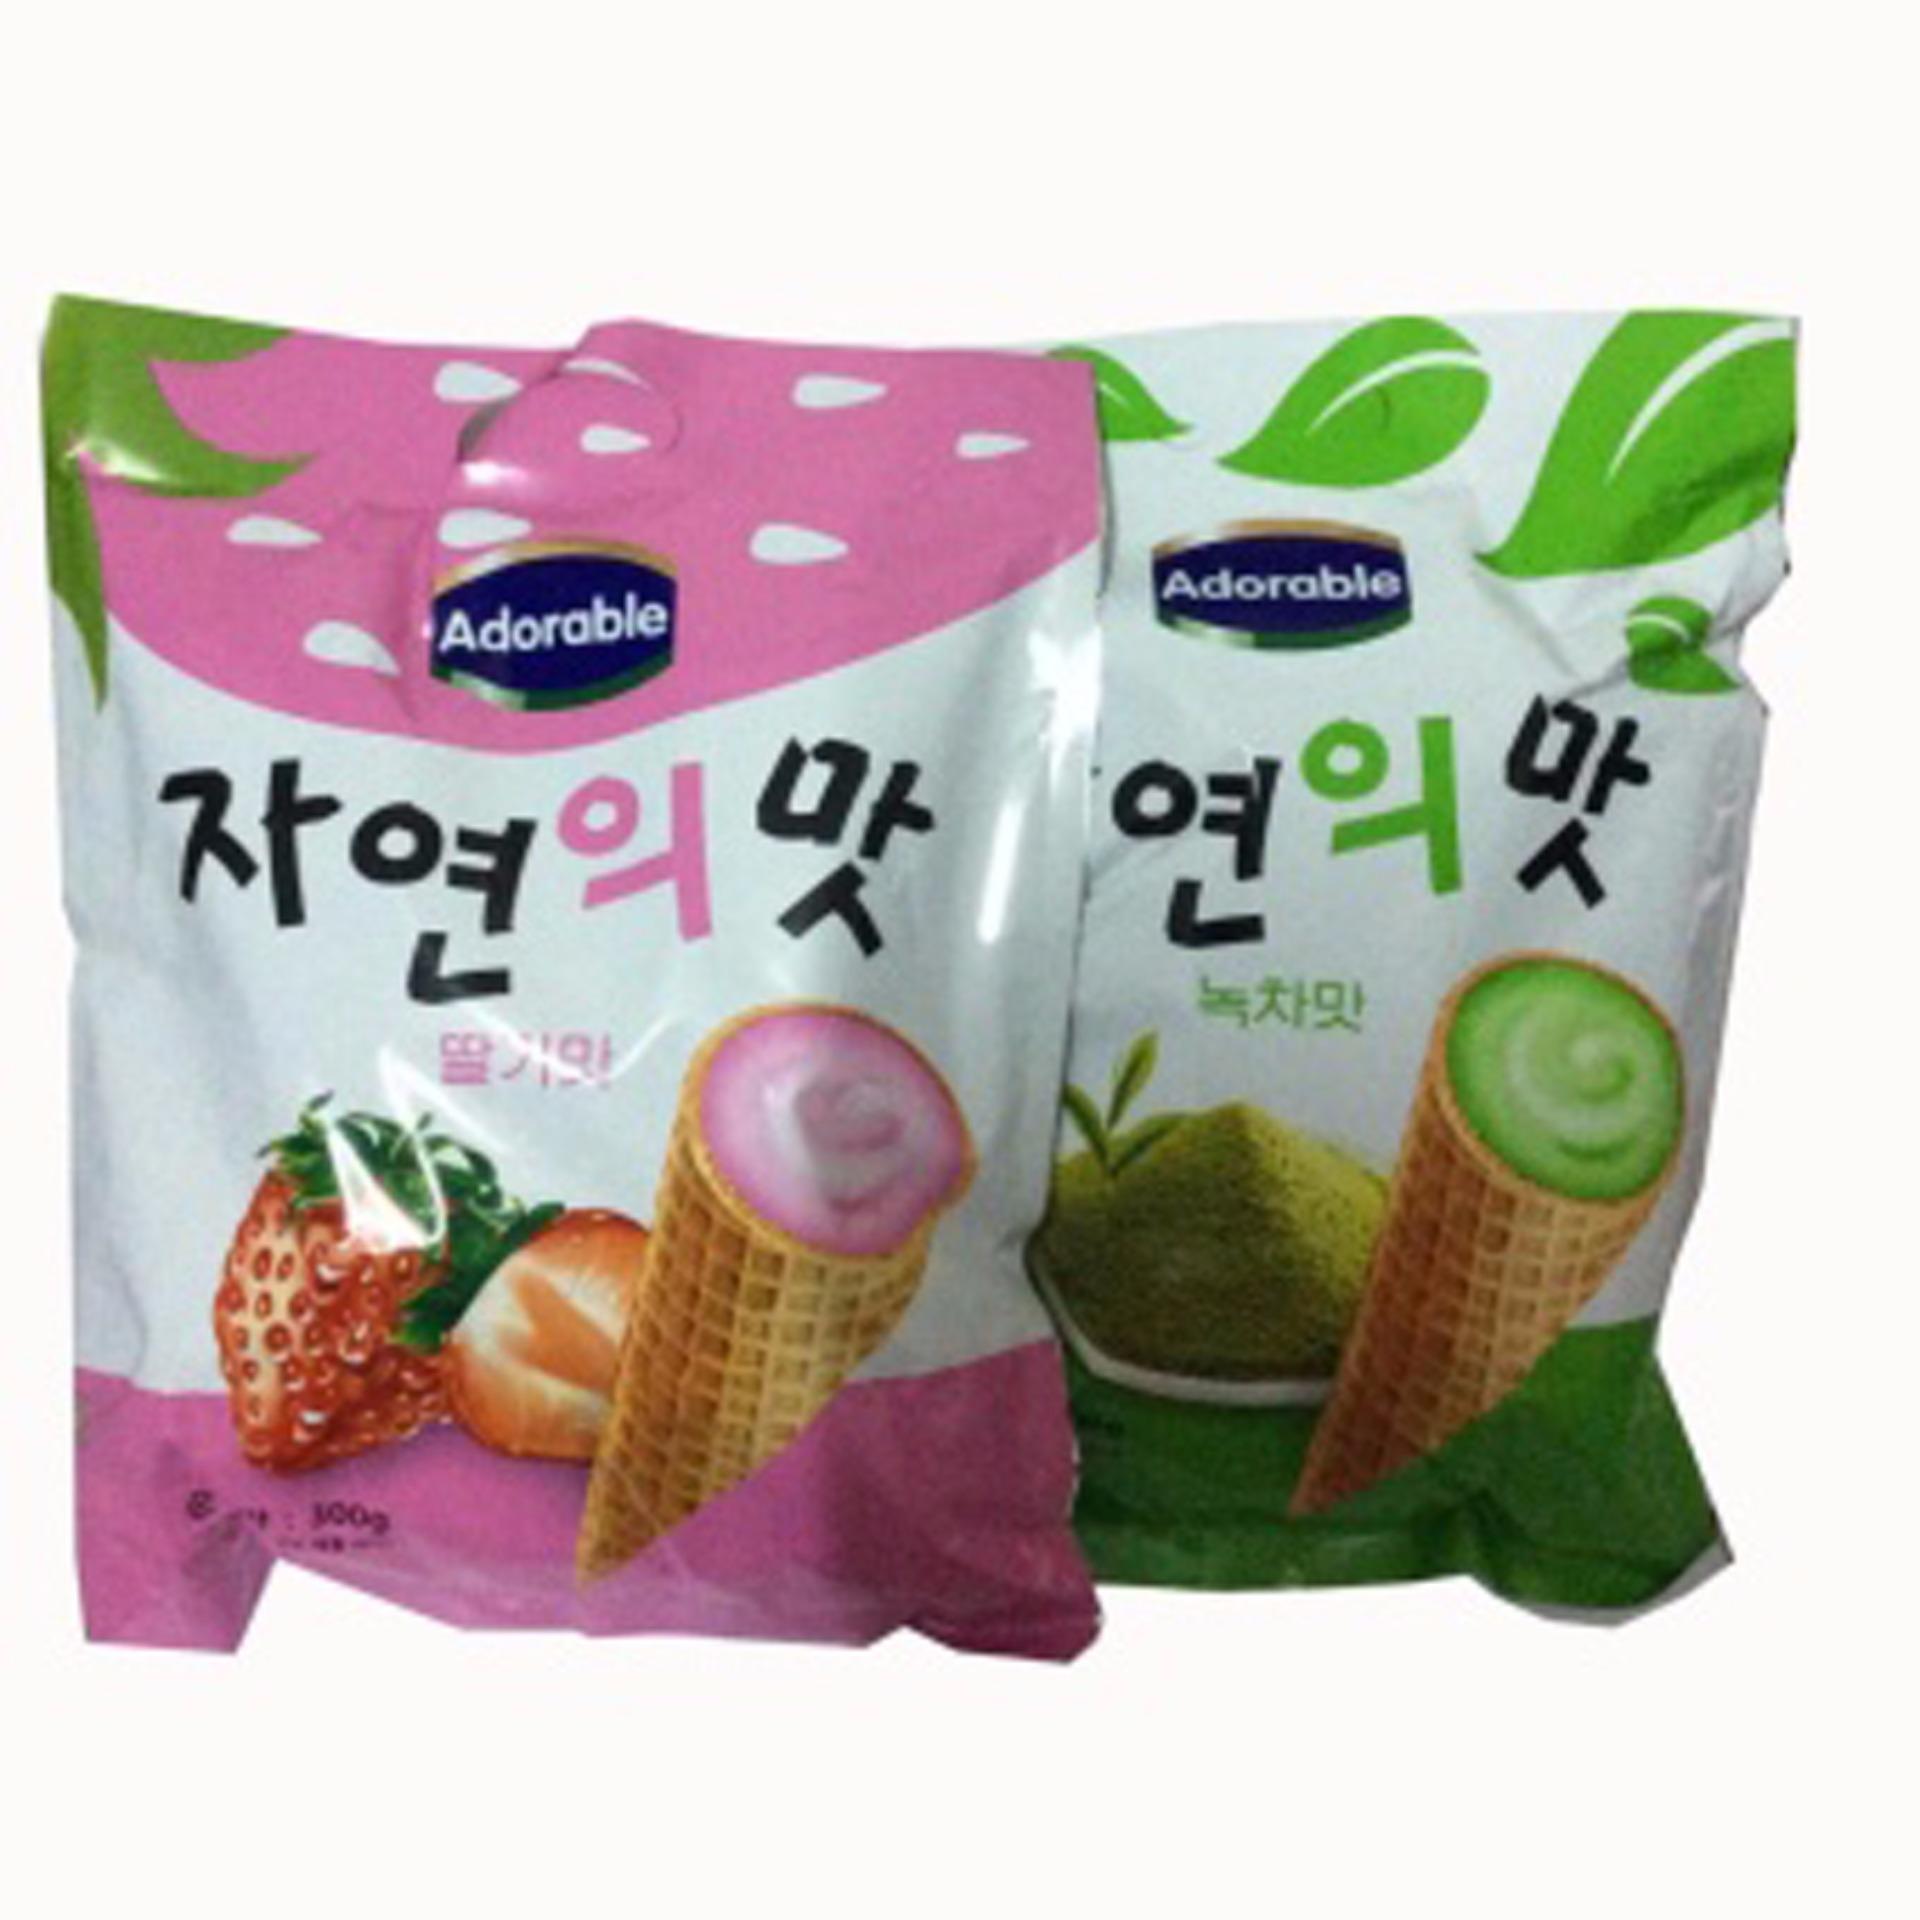 Bộ 2 Gói Bánh ốc quế Adorable (Kem Dâu+Trà Xanh) 300g/gói Hàn Quốc